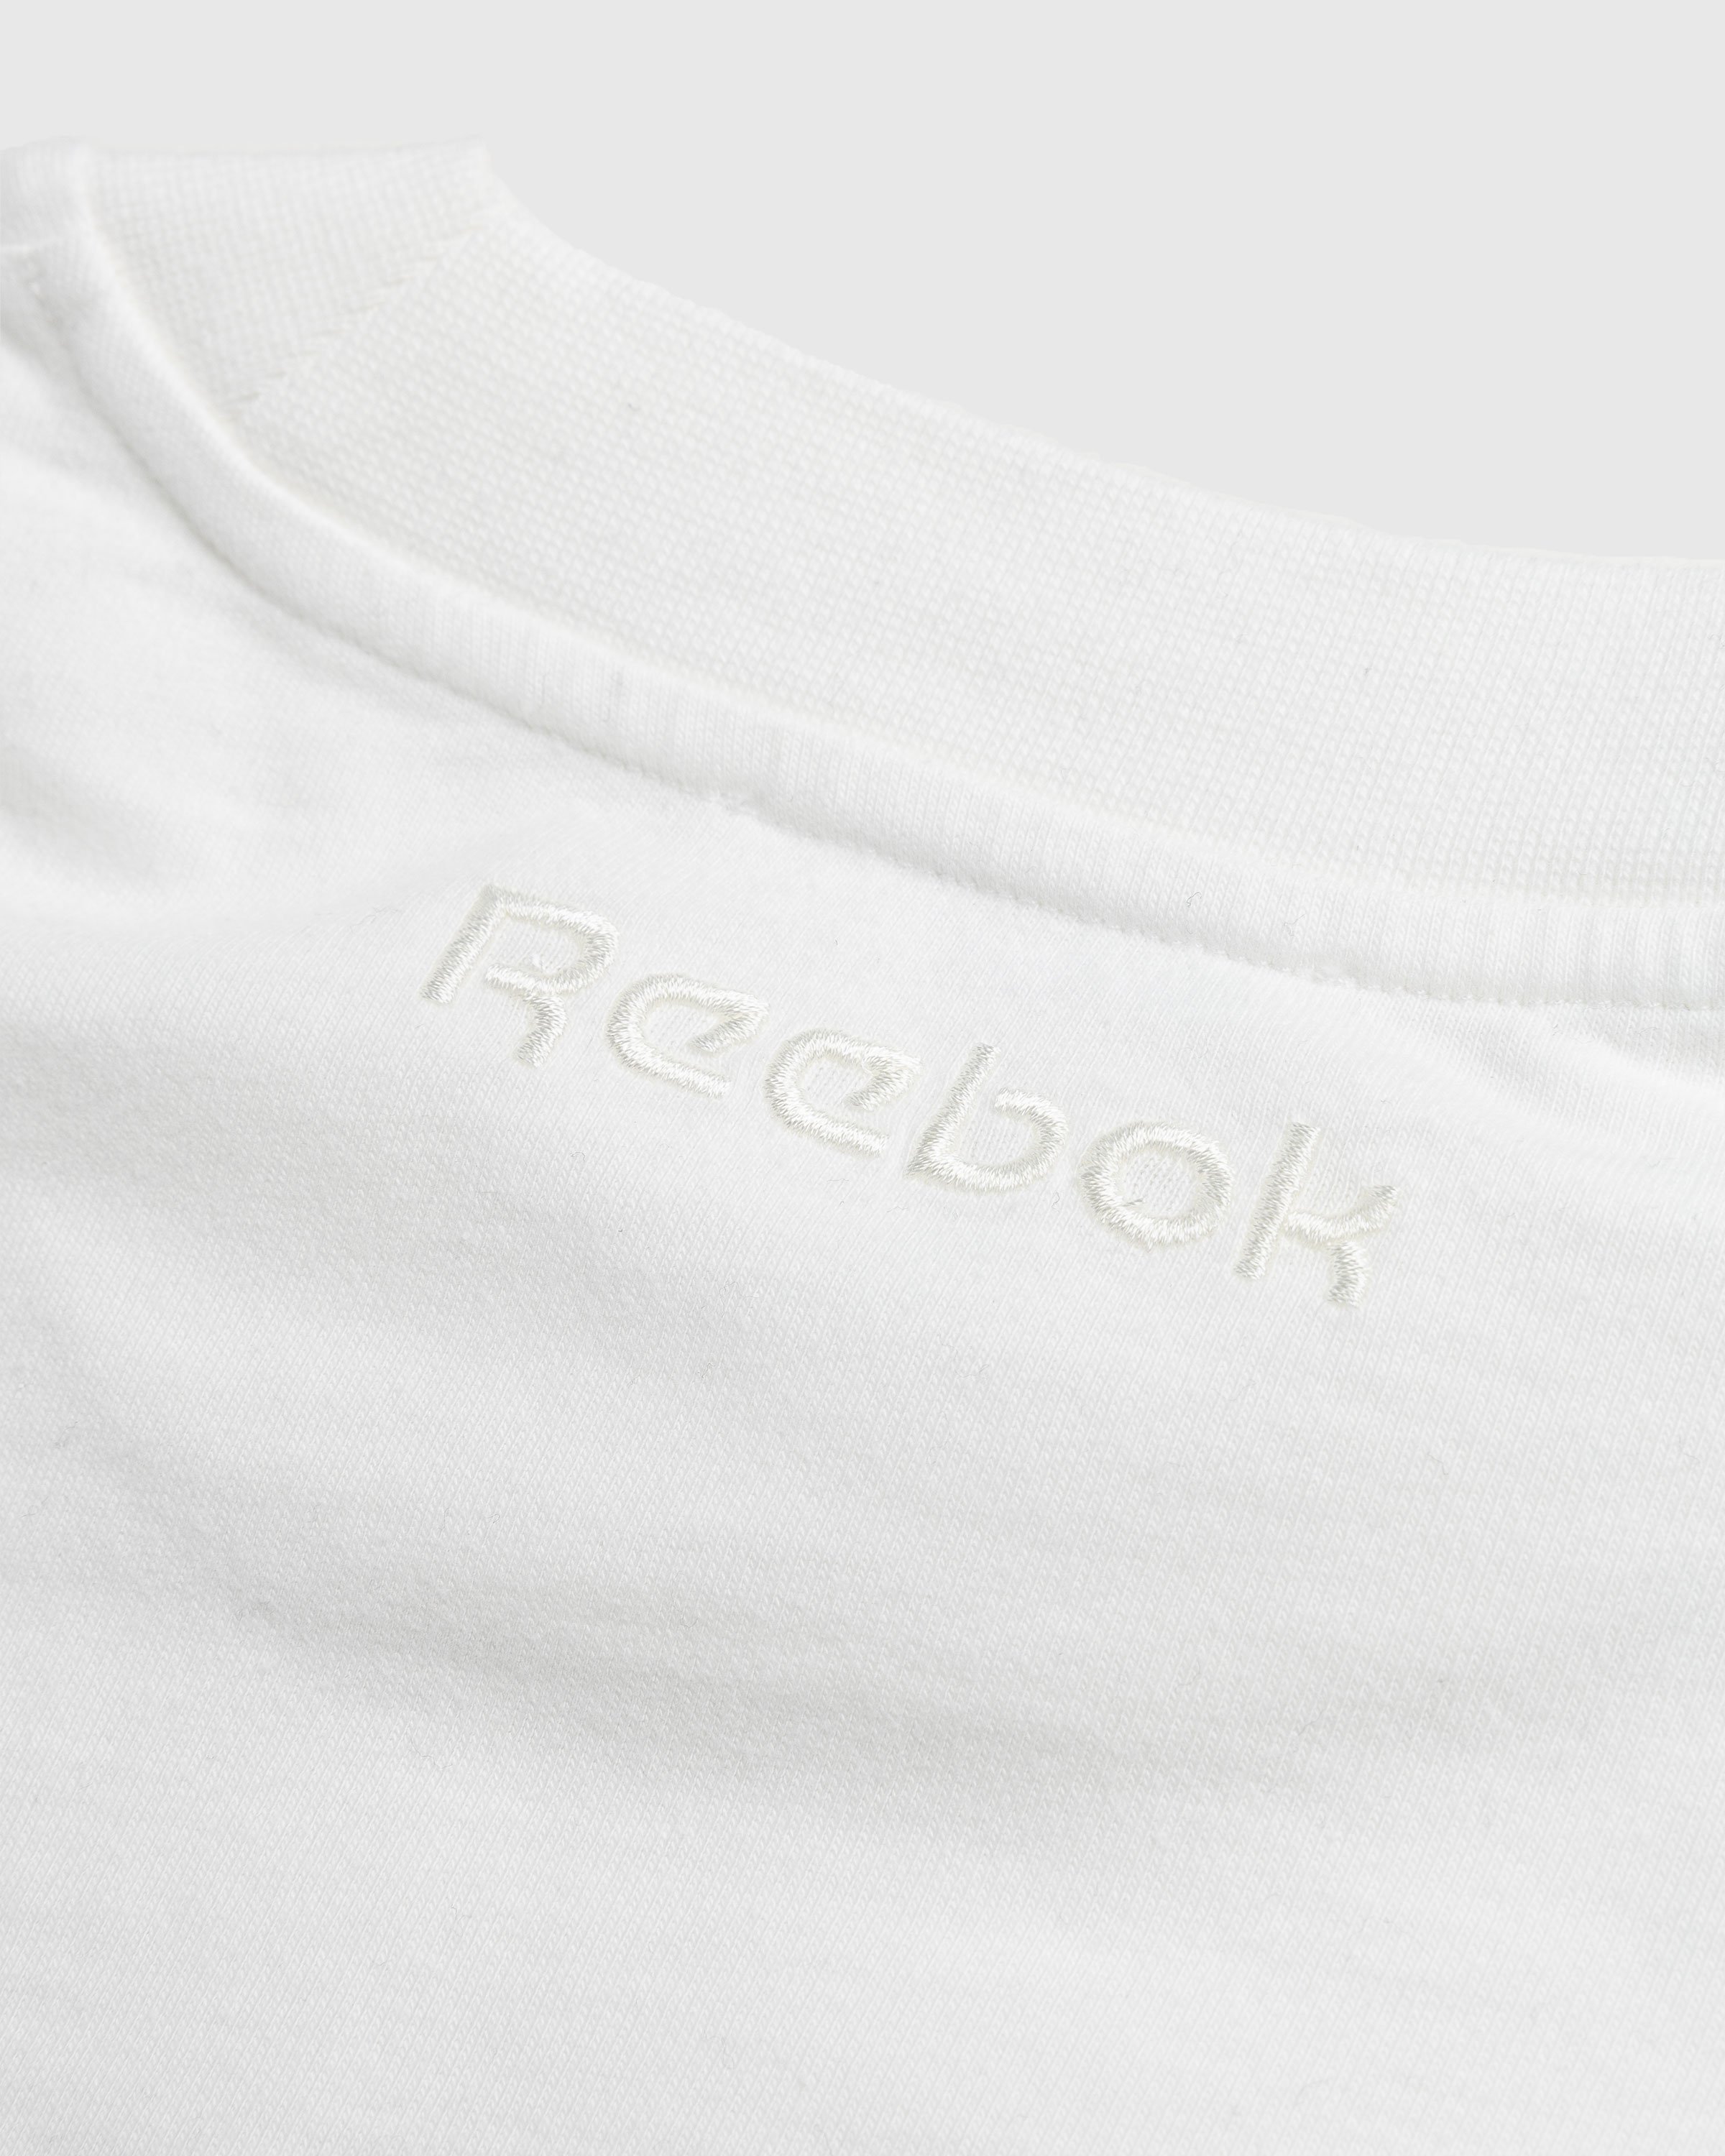 Reebok - Piped T-Shirt Bones - Clothing - White - Image 6